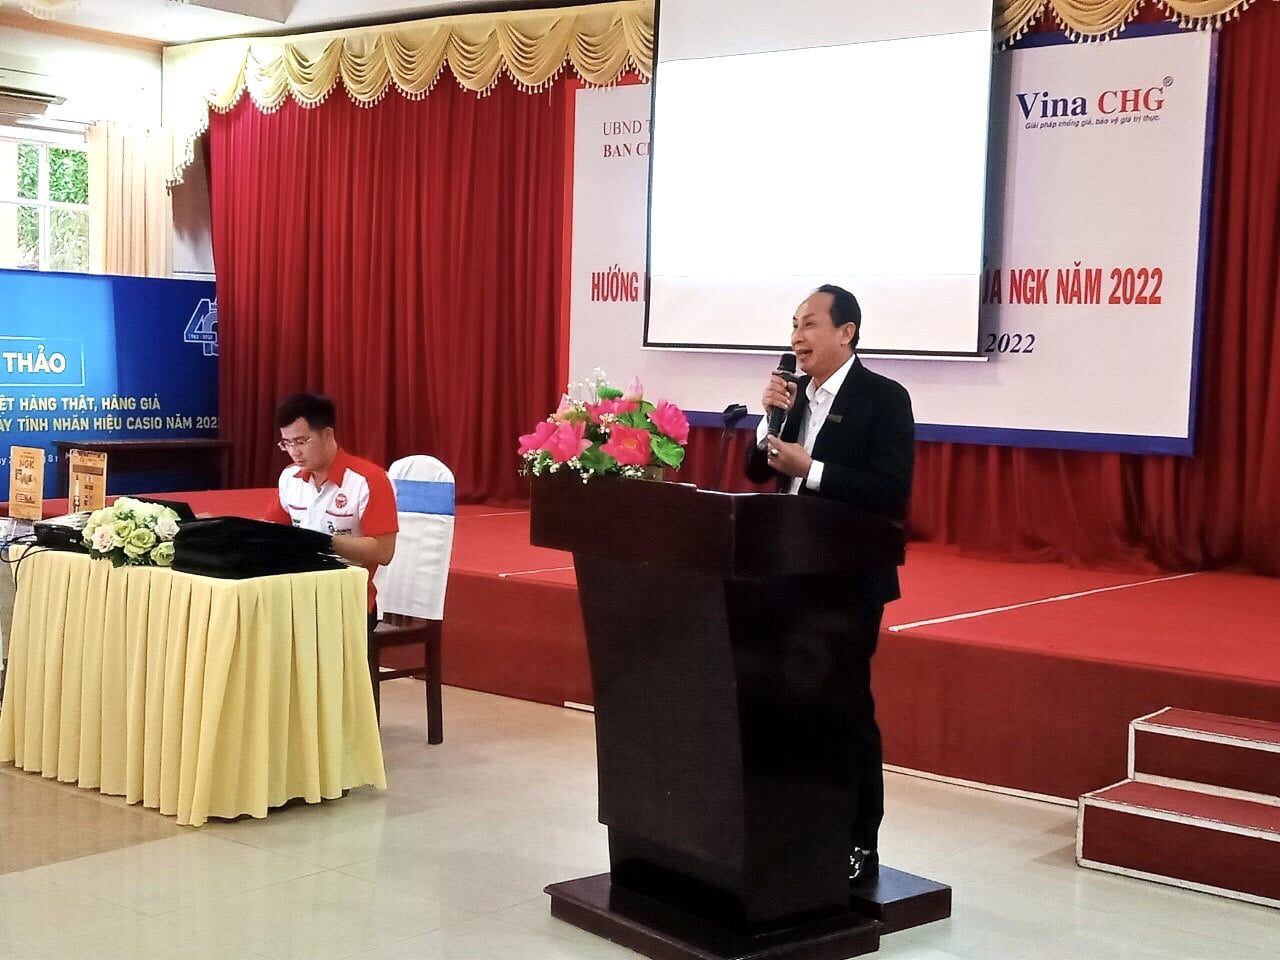 Ông Nguyễn Viết Hồng - TGĐ Vina CHG chia sẻ về các giải pháp chống hàng giả áp dụng nền tảng số, công nghệ truy xuất nguồn gốc tích hợp chống hàng giả.